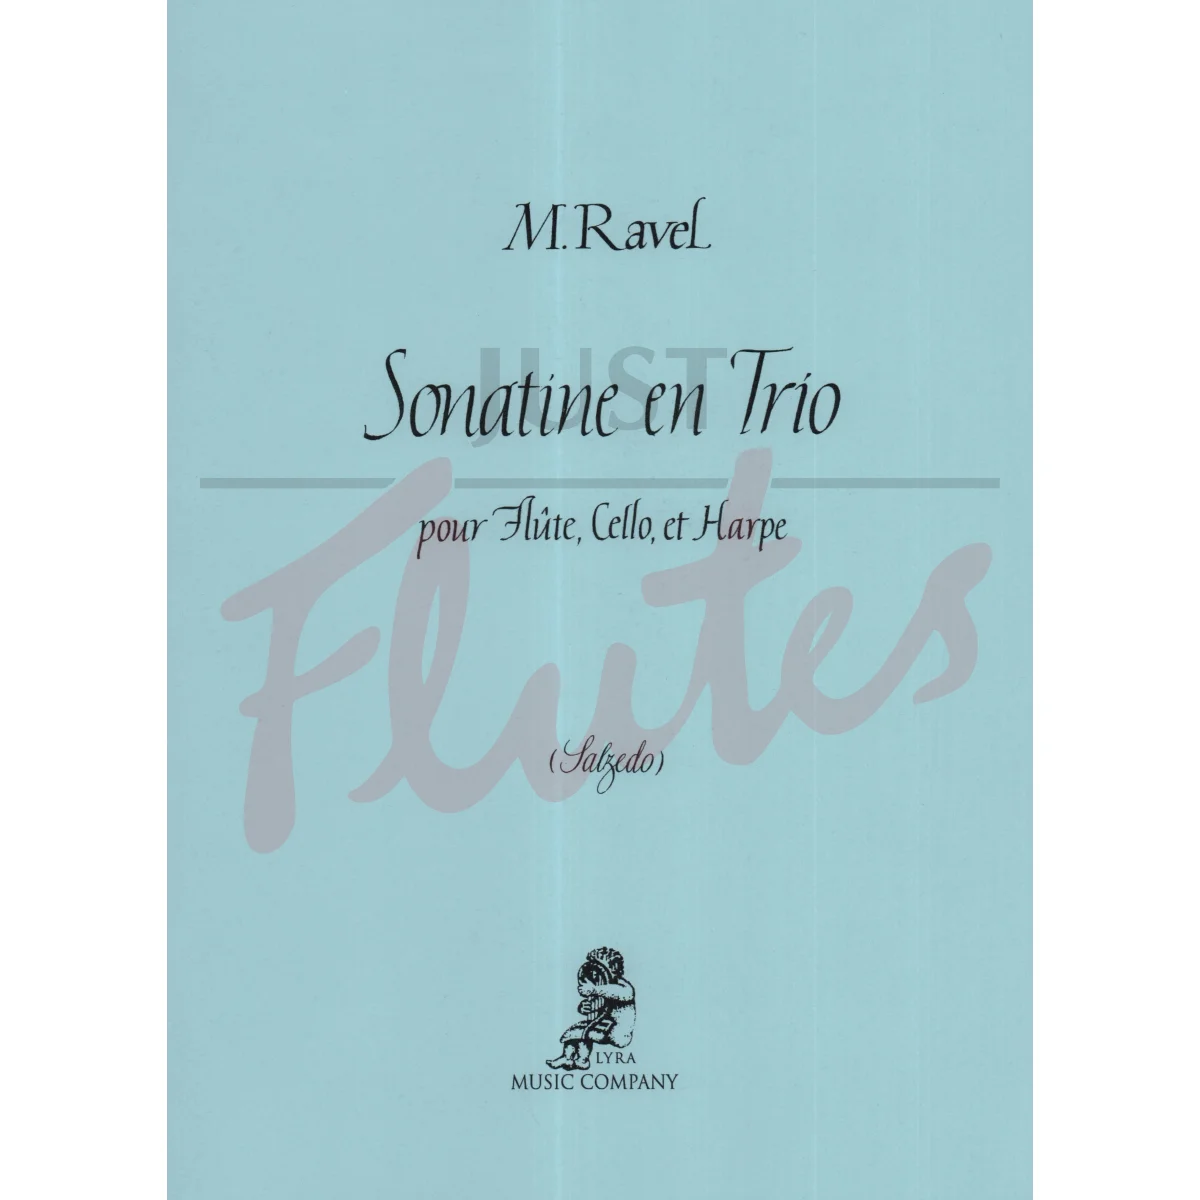 Sonatine en Trio for Flute, Cello and Harp